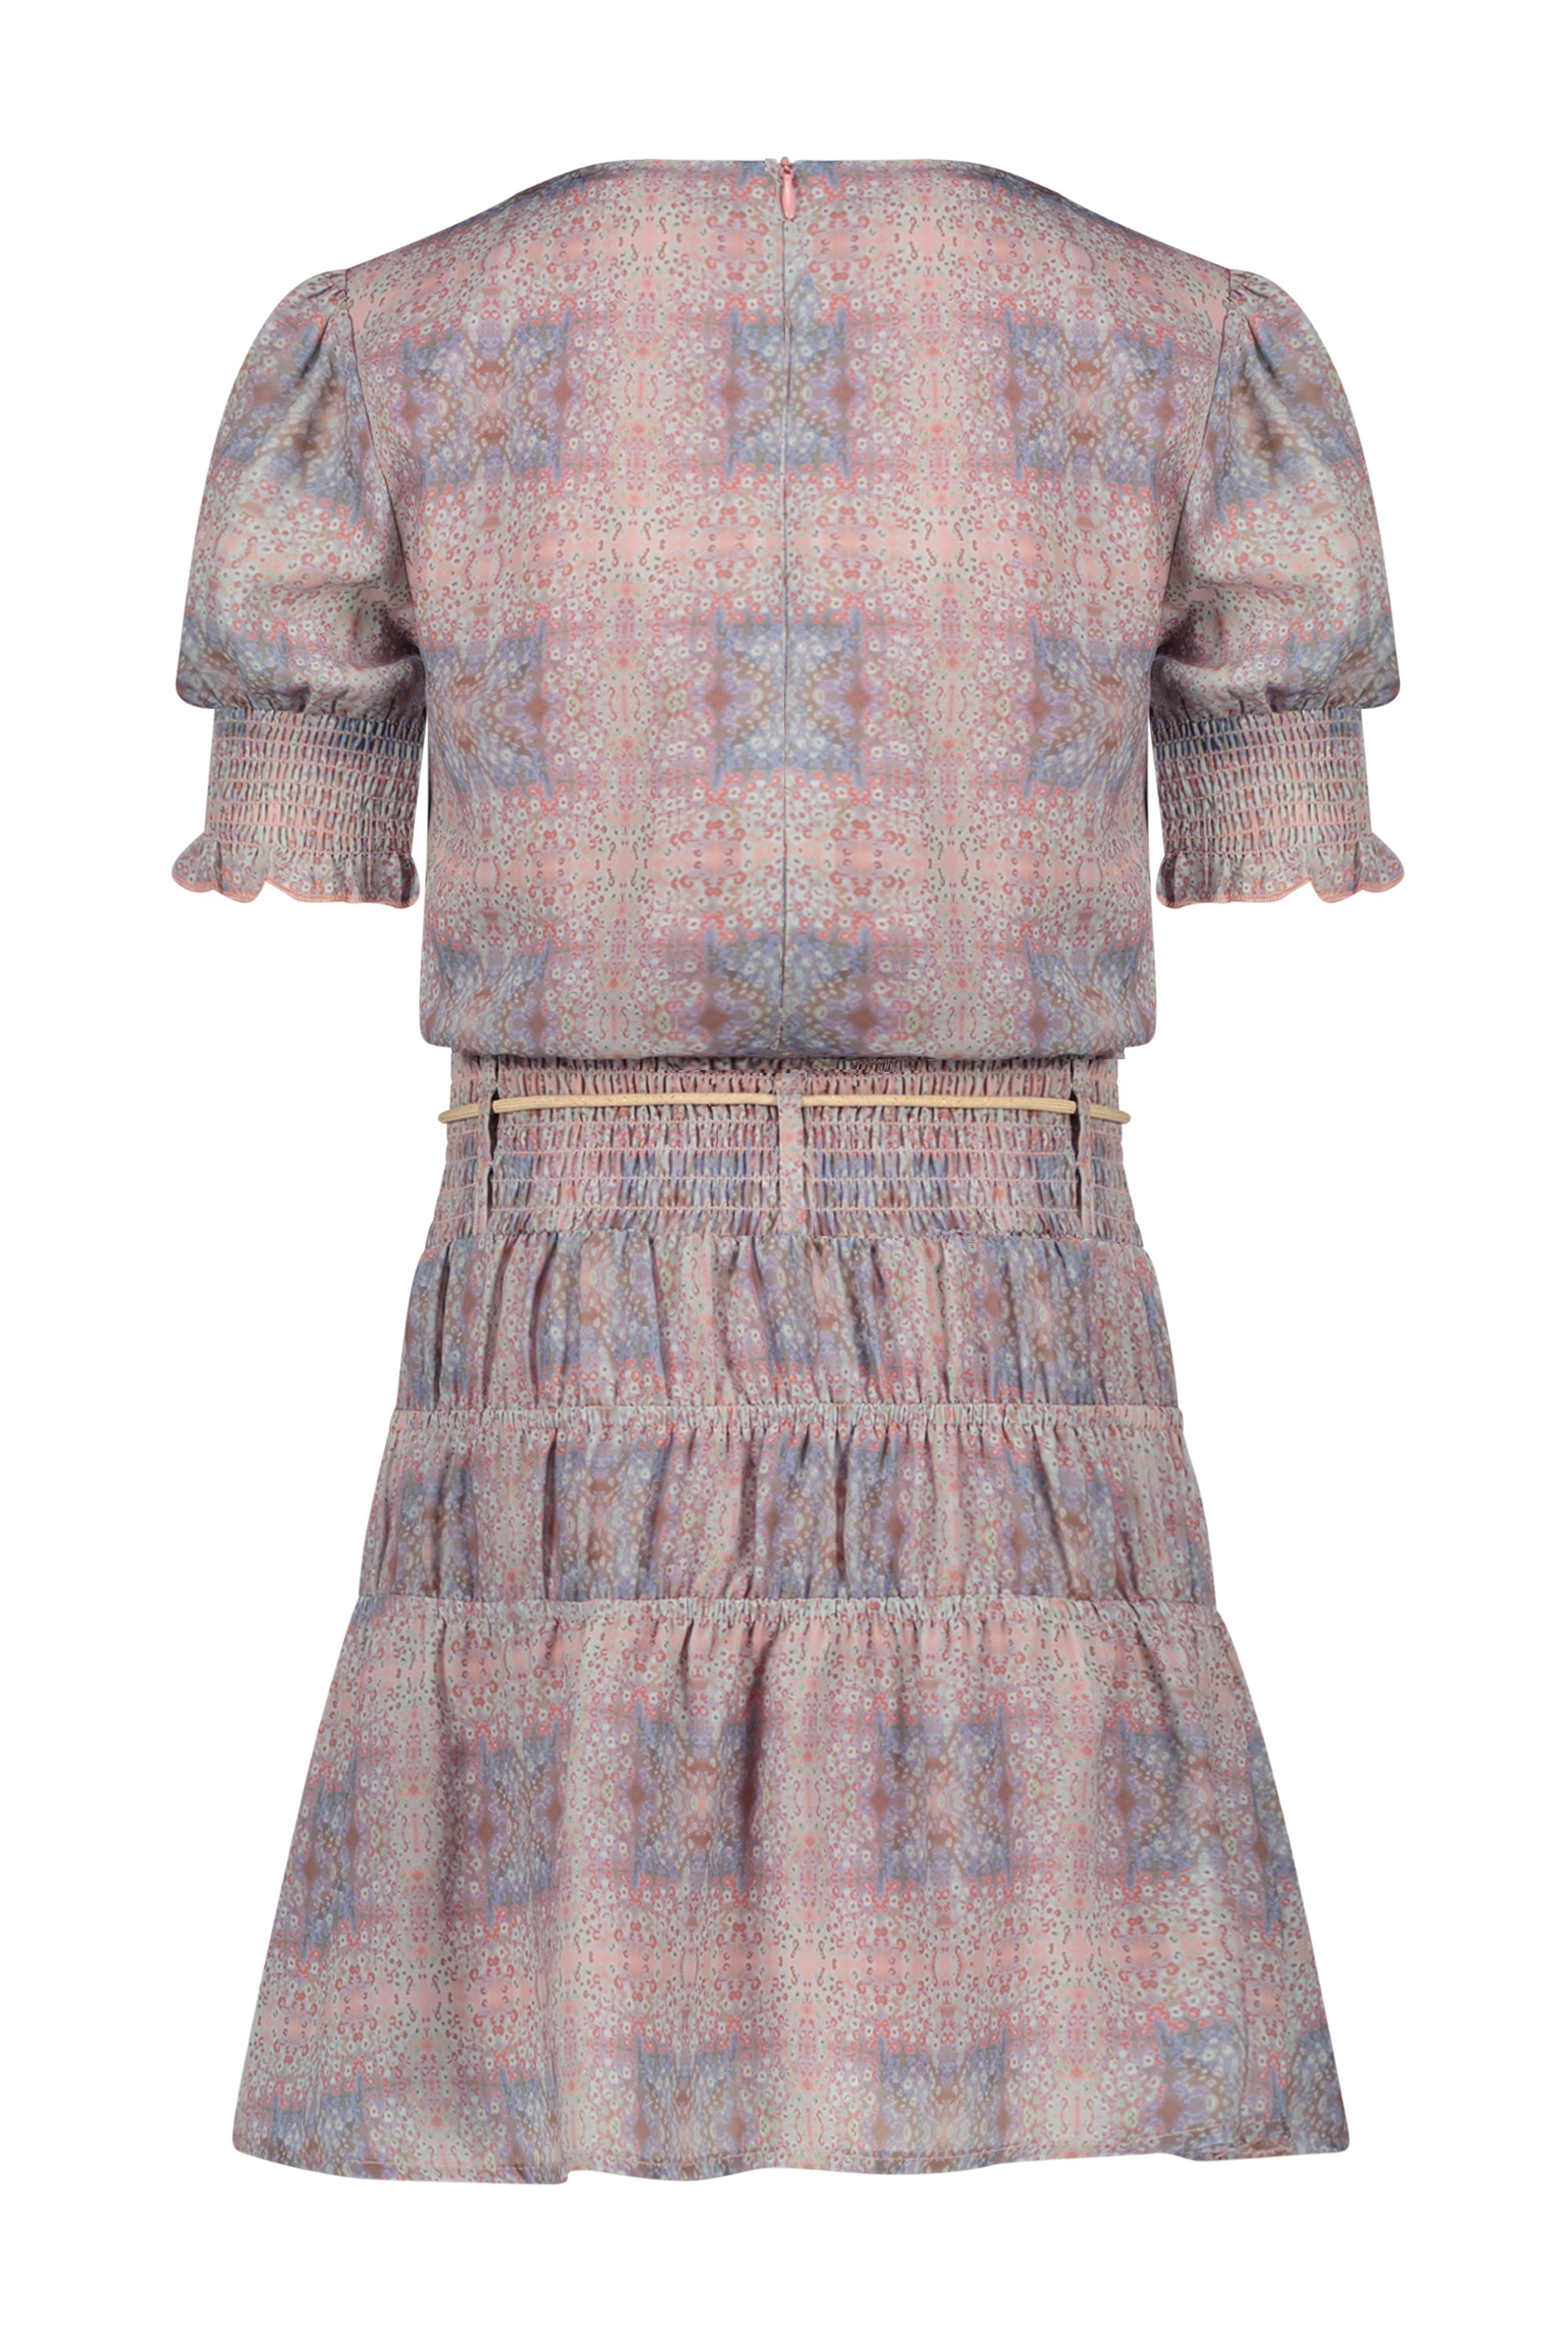 Meisjes Manyu s/sl dress with elasticated details at skirt van NoNo in de kleur Rosy Ginger in maat 134-140.